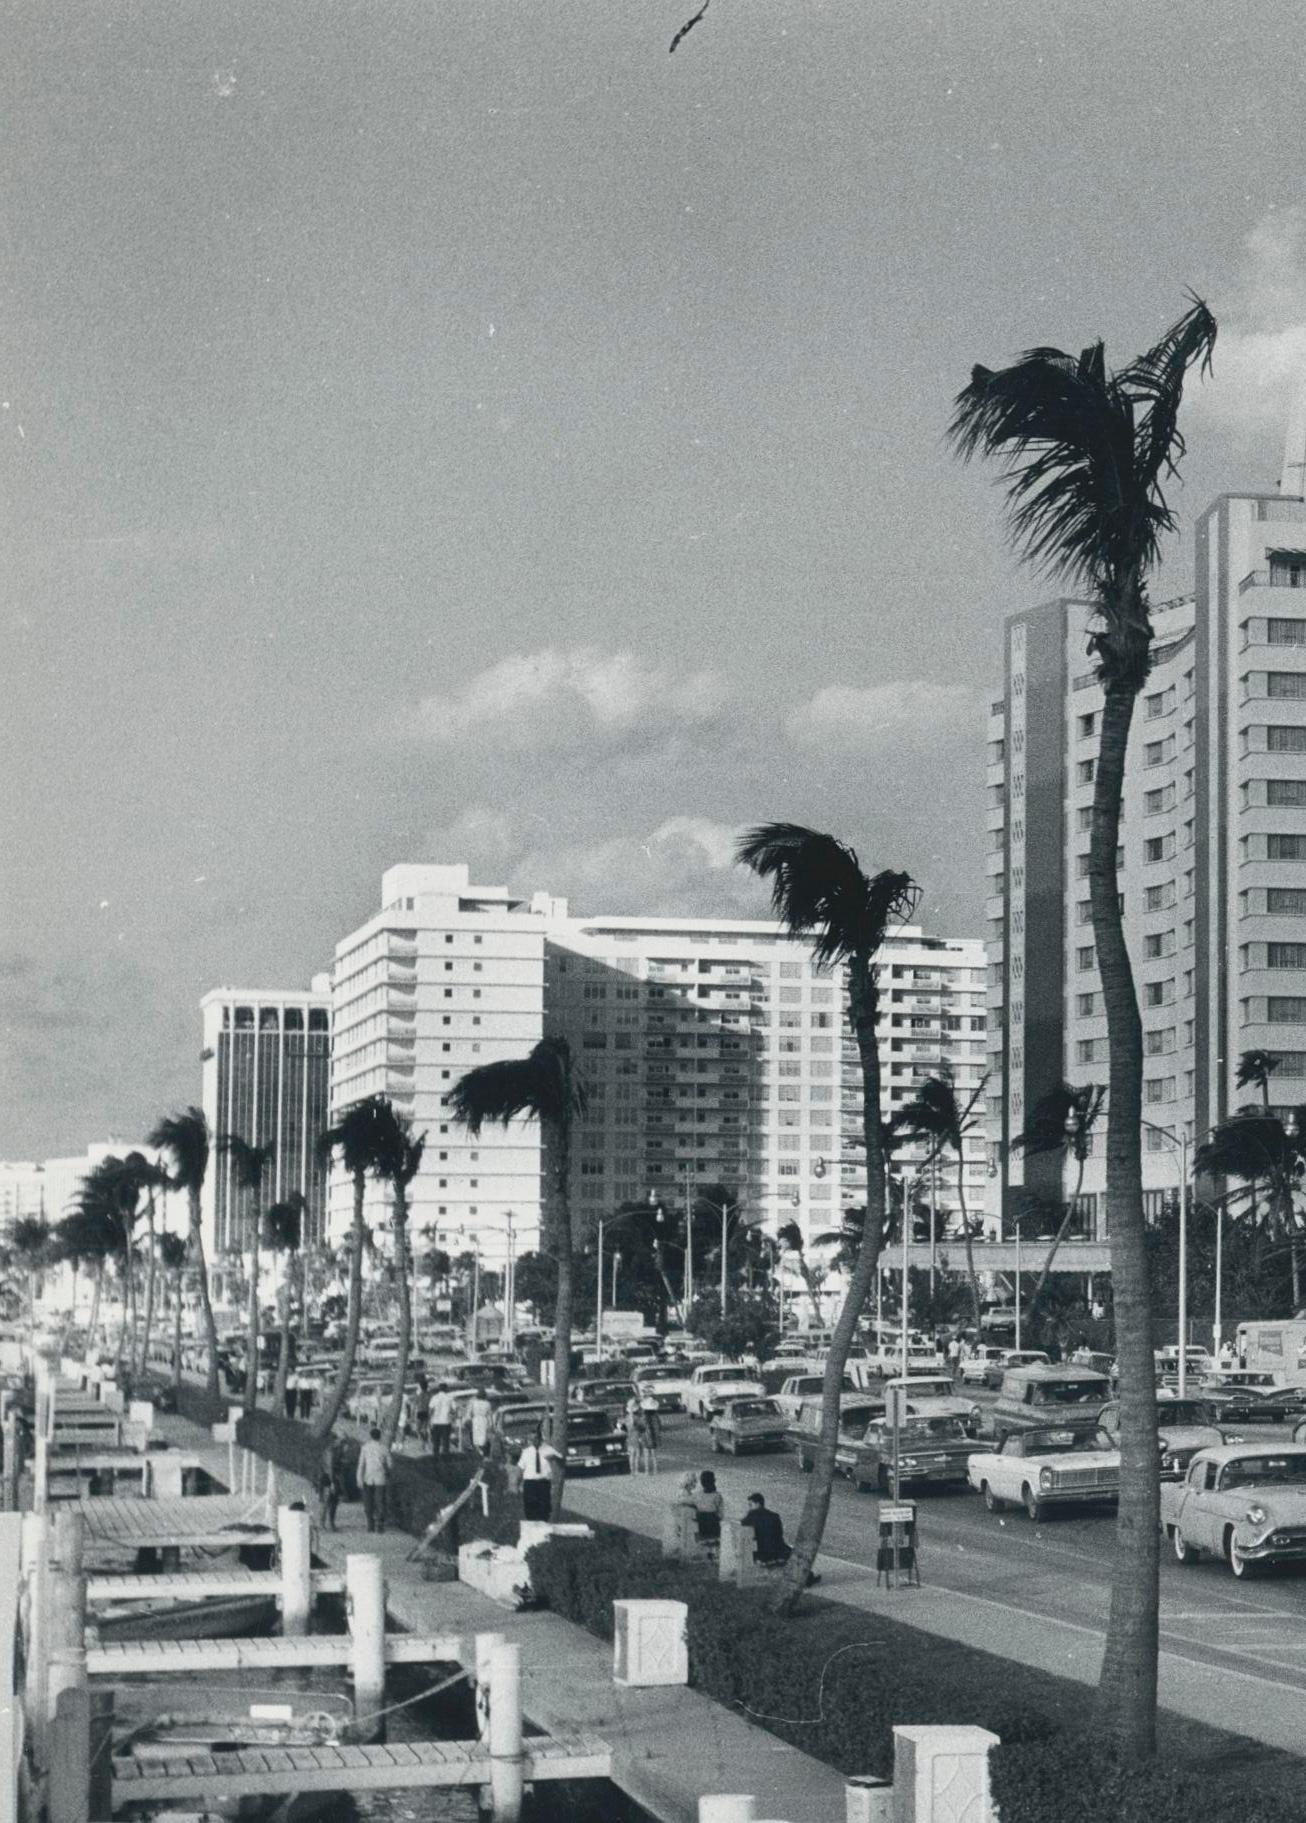 Miami Beach, Straßenfotografie, Schwarz-Weiß, USA 1960er Jahre, 18,2 x 23,3 cm – Photograph von Erich Andres